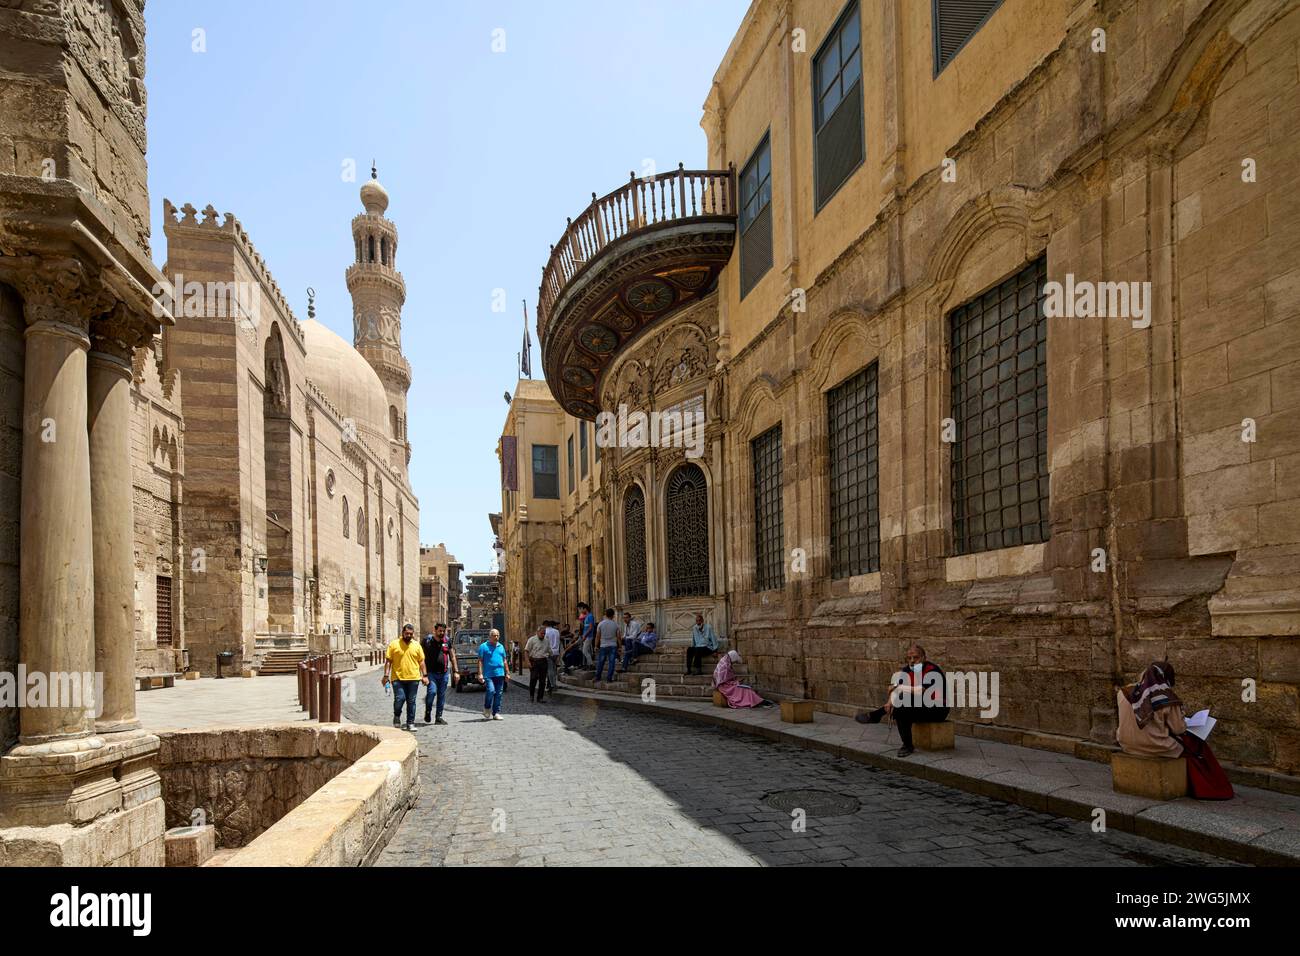 Mosquée Madrasa du complexe Sultan Barquq sur la rue Muizz au Caire, Egypte Banque D'Images